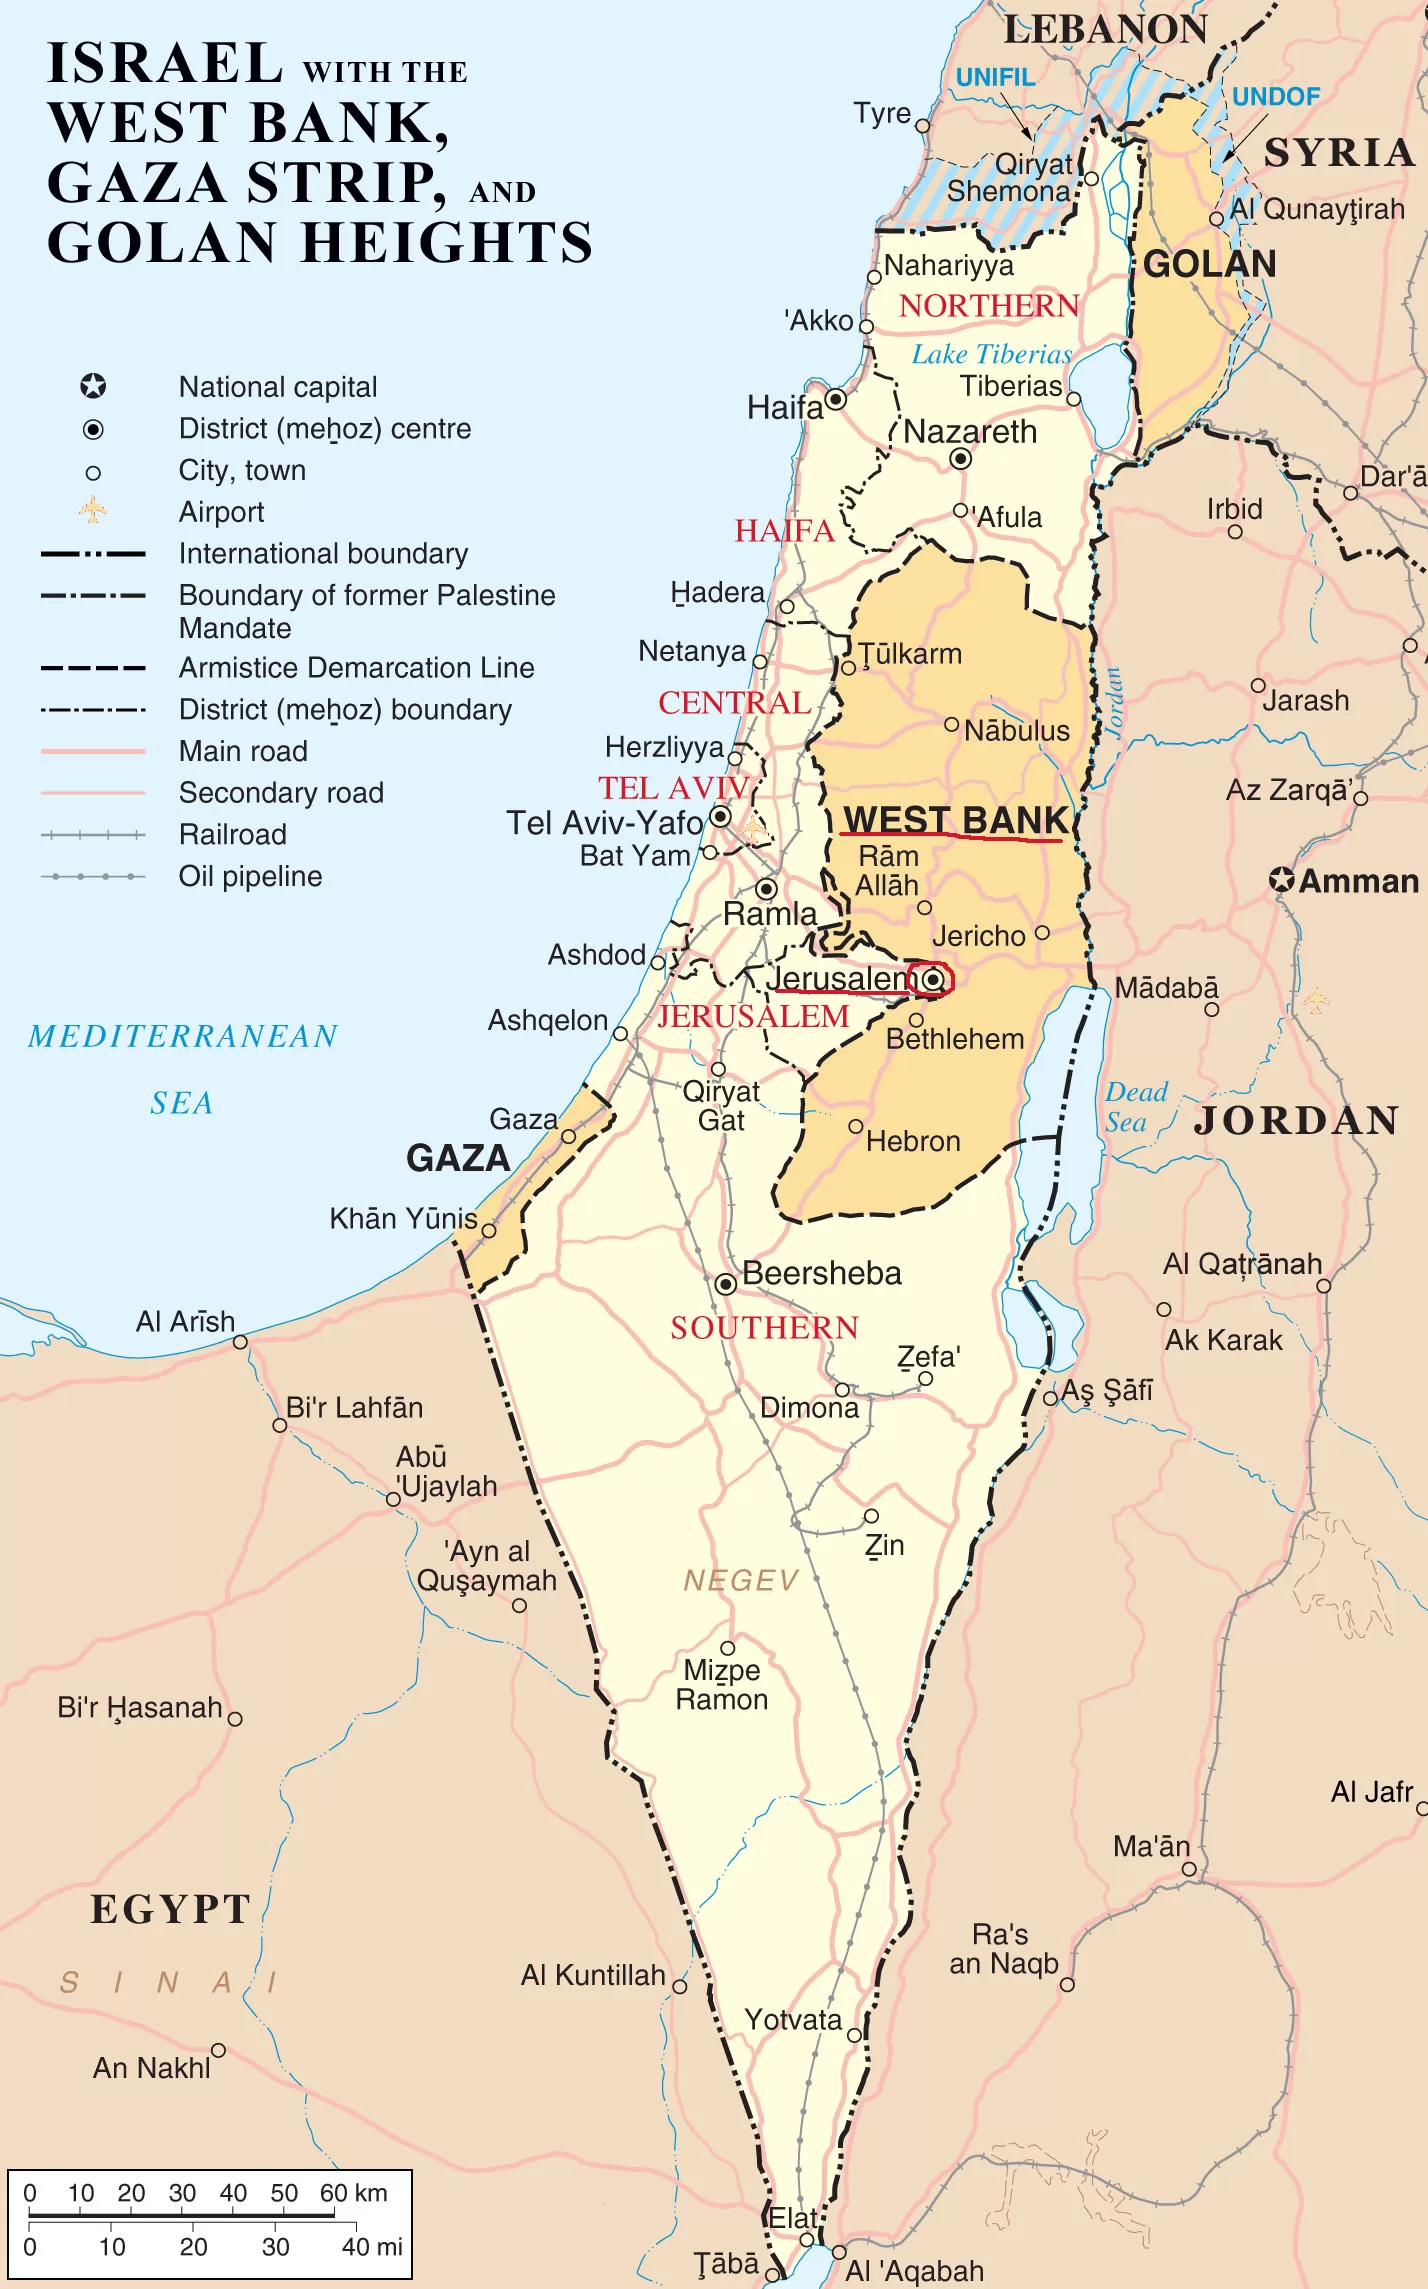 犹太人立国之战，以色列实际控制土地增加了多少？_凤凰网